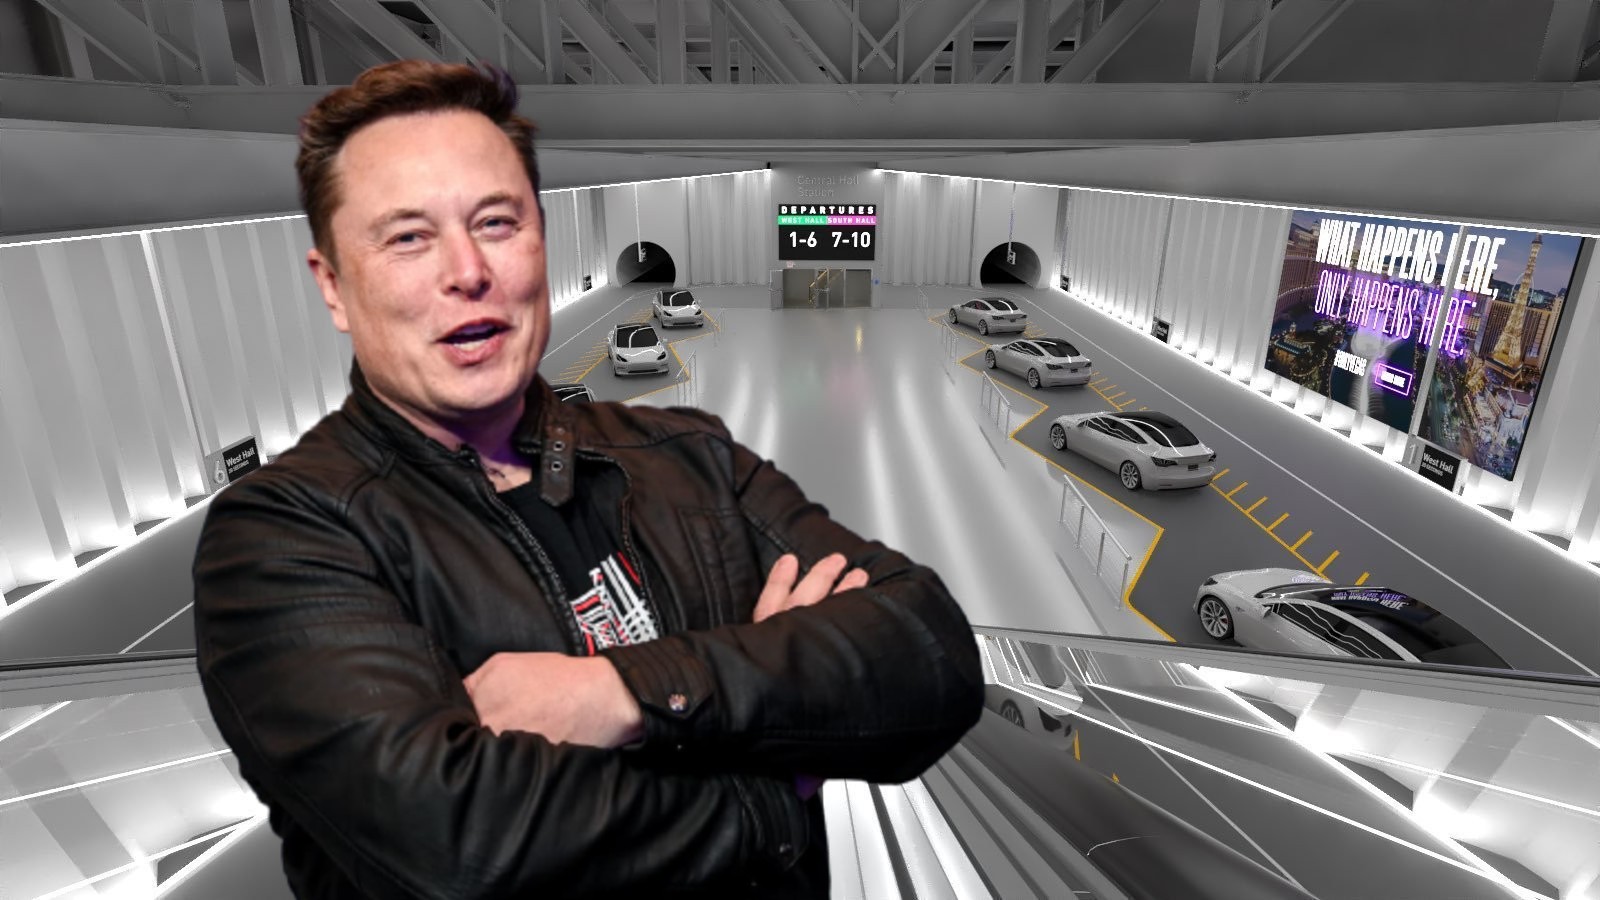 Fort Lauderdale quiere ser el primero en llevar la tecnología de túneles de Elon Musk a Florida